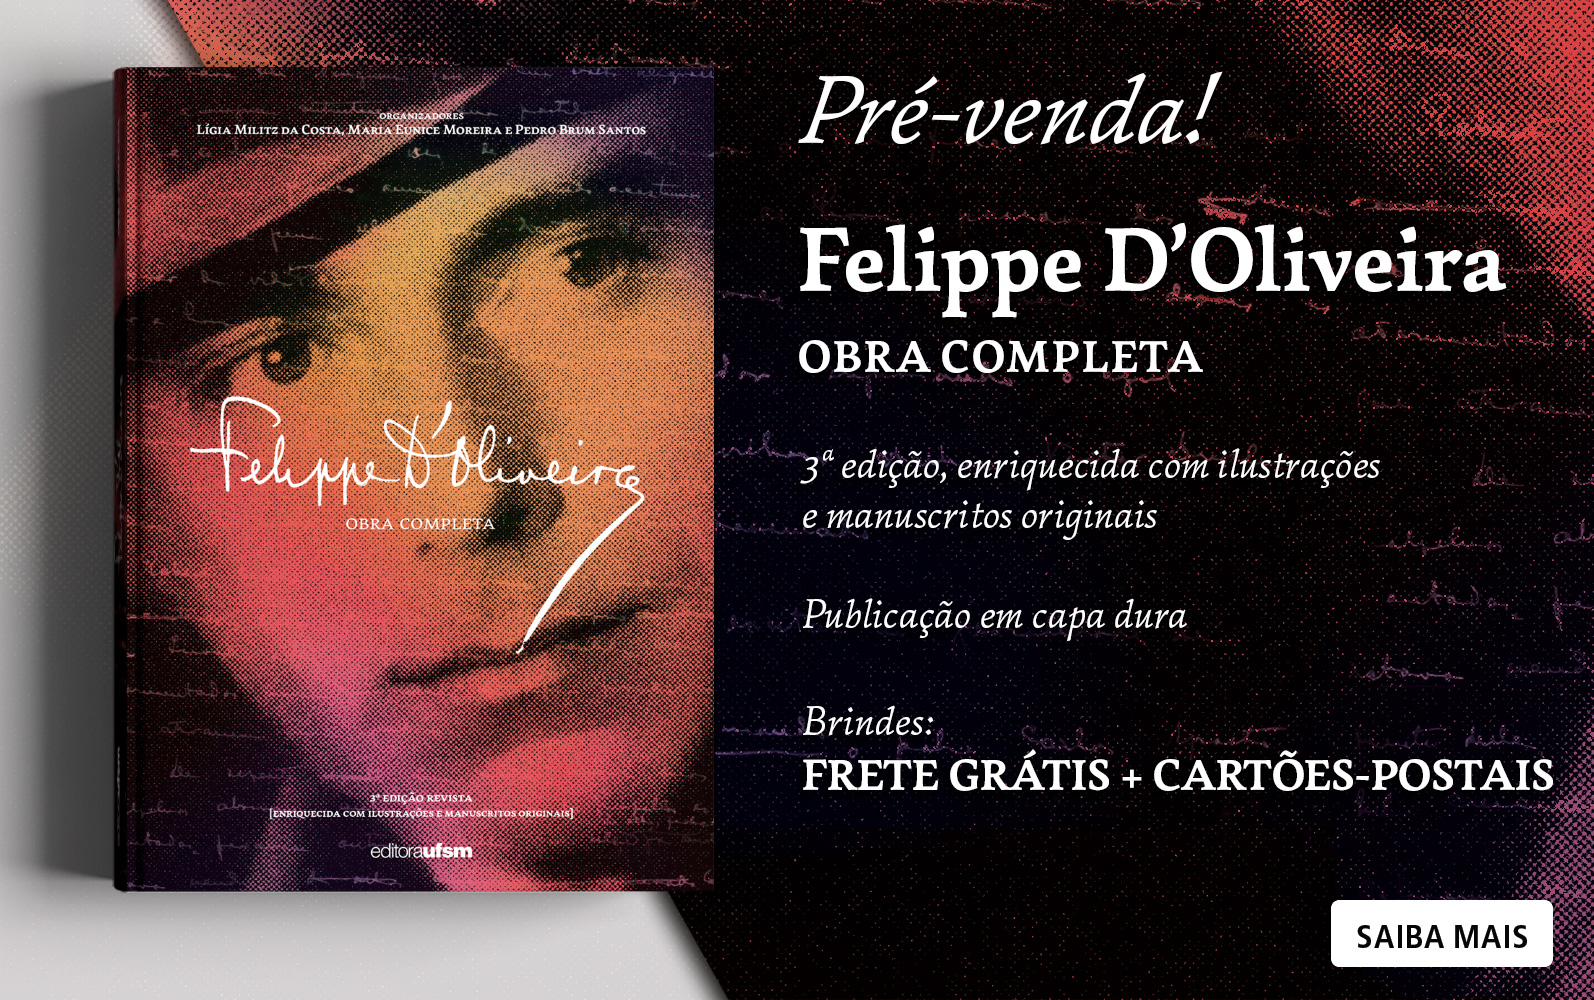 Saiba mais sobre o livro Felippe D'Oliveira: obra completa